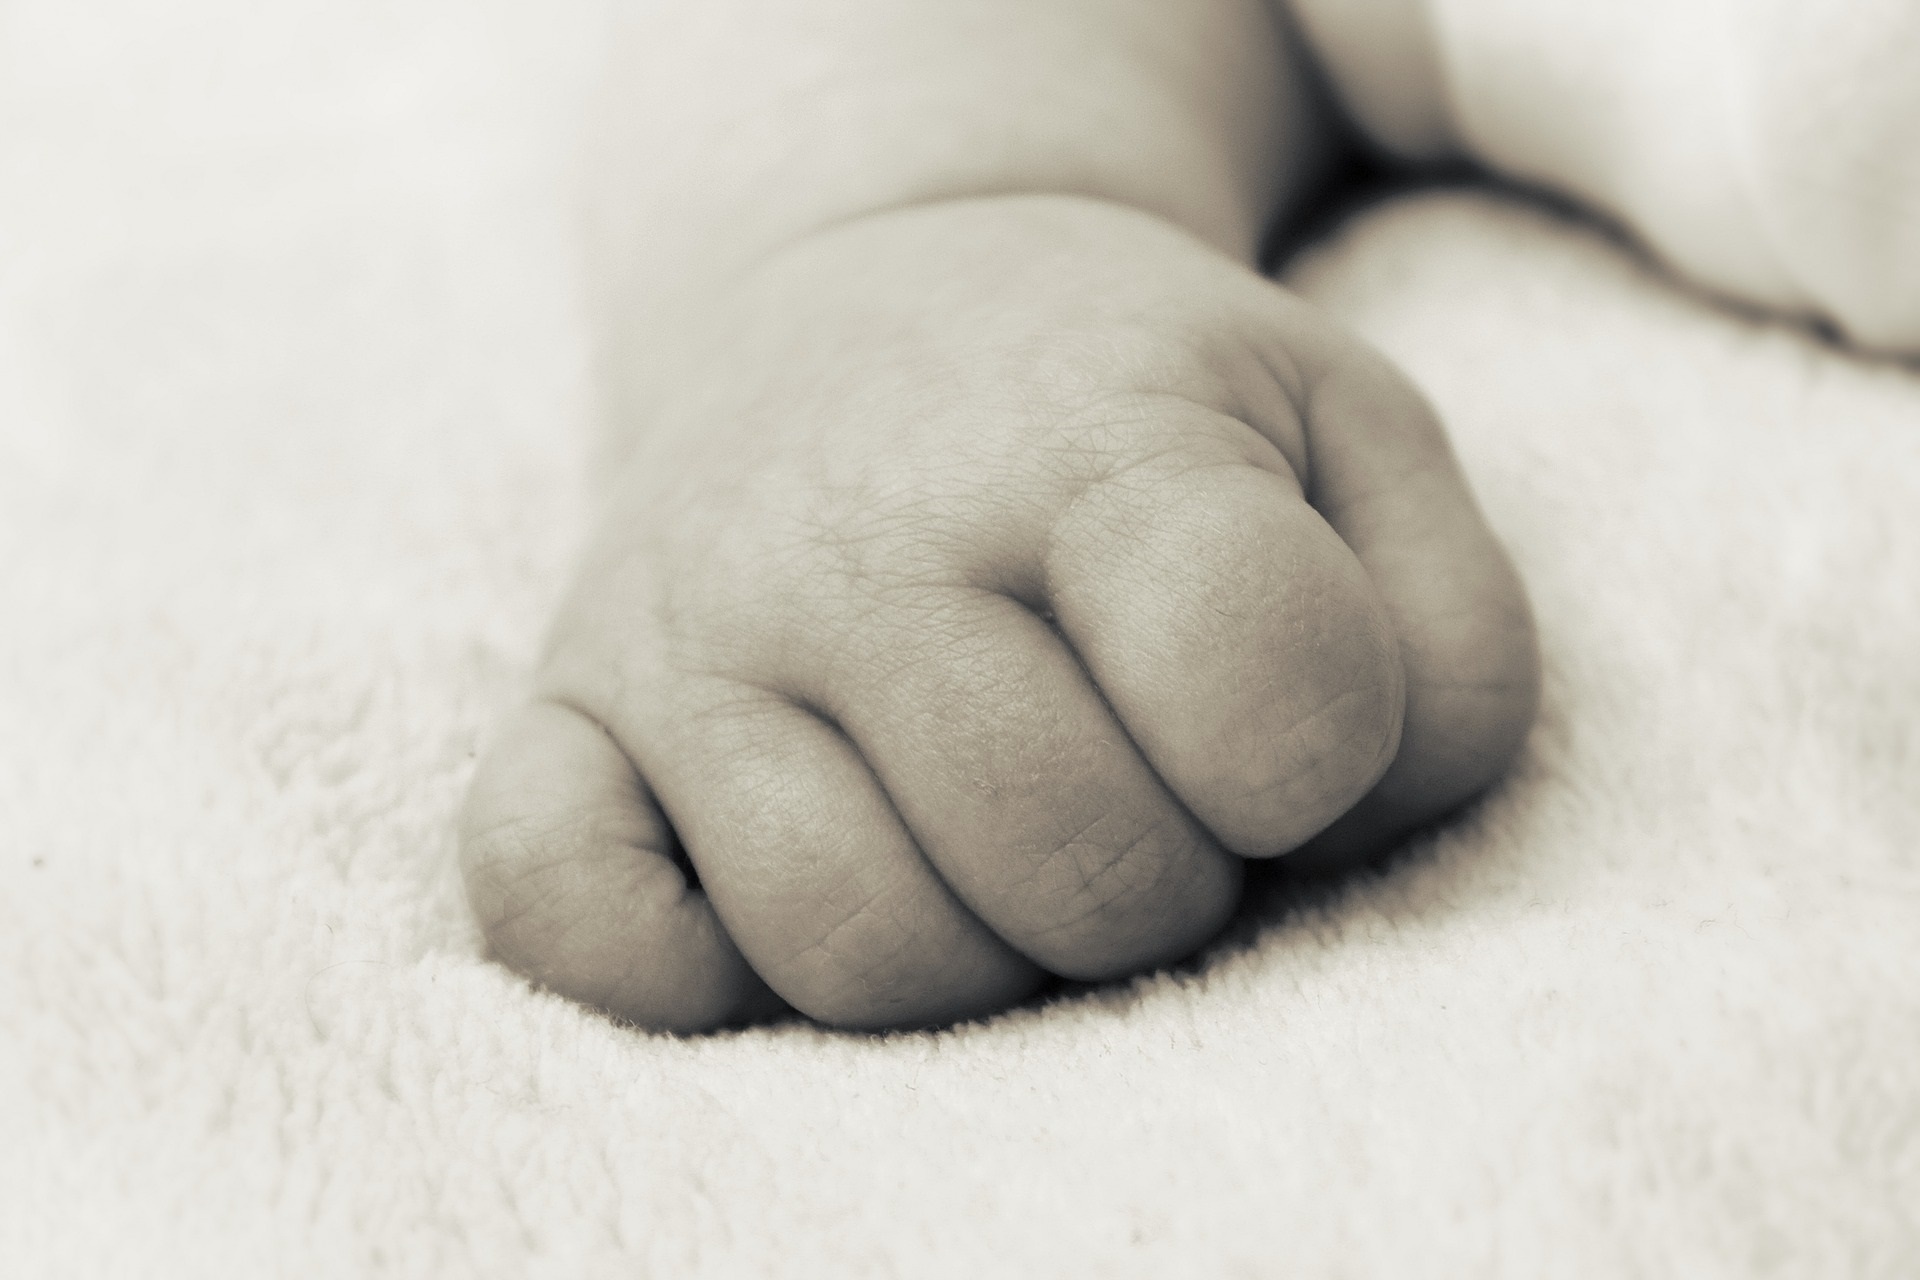 La madre asesinó al recién nacido poco después de haber dado a luz